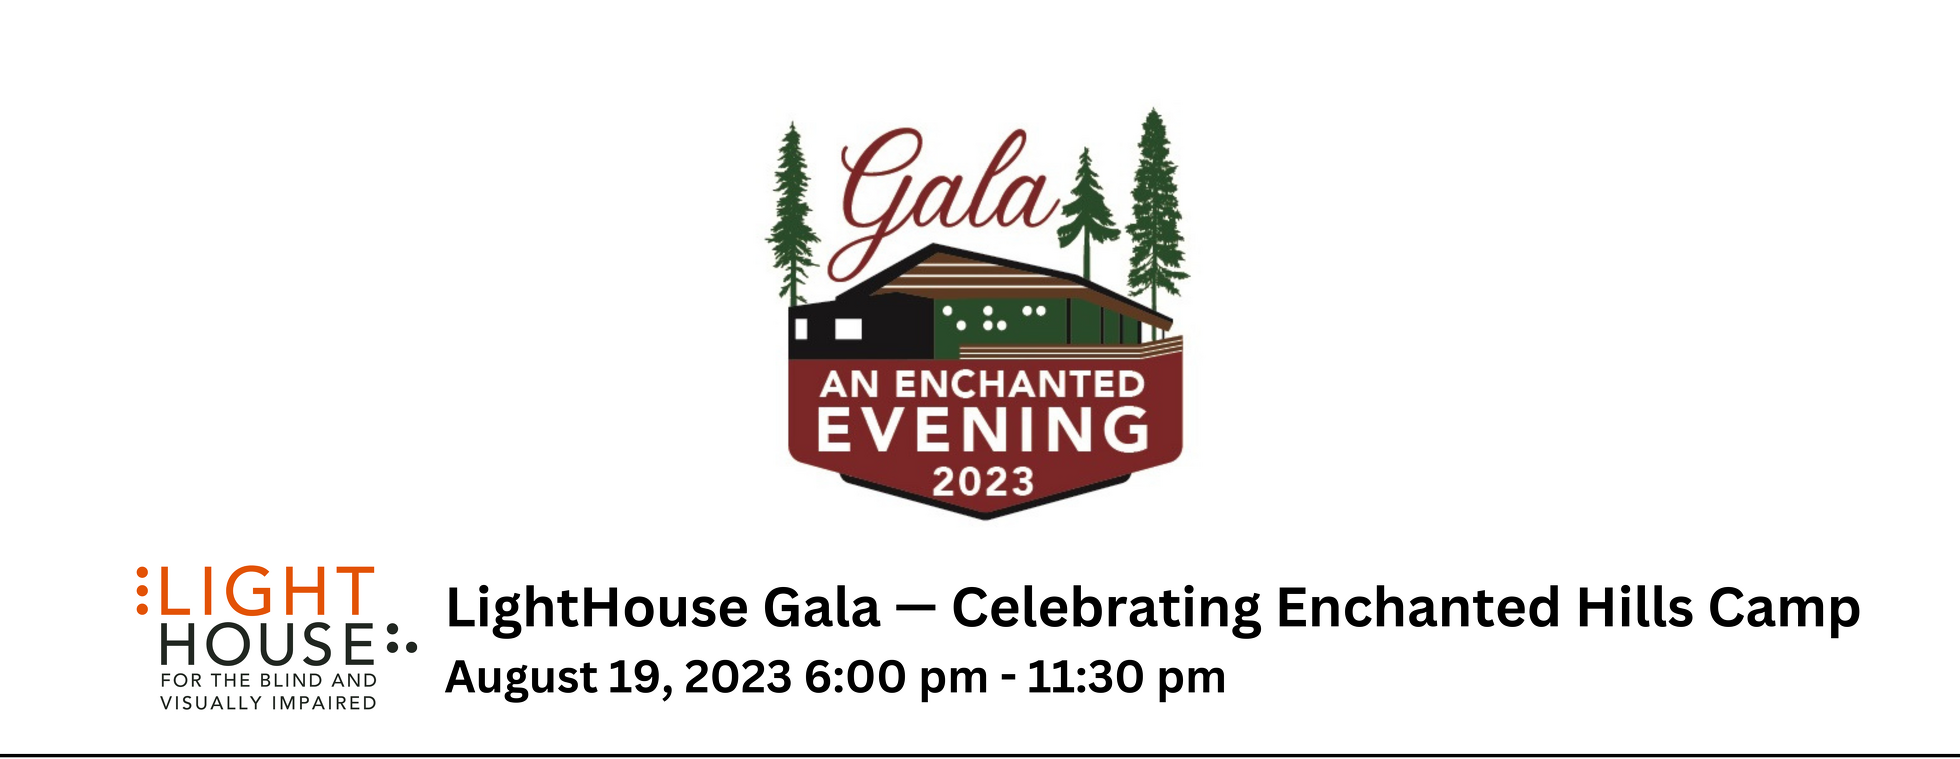 LightHouse Gala — Celebrating Enchanted Hills Camp